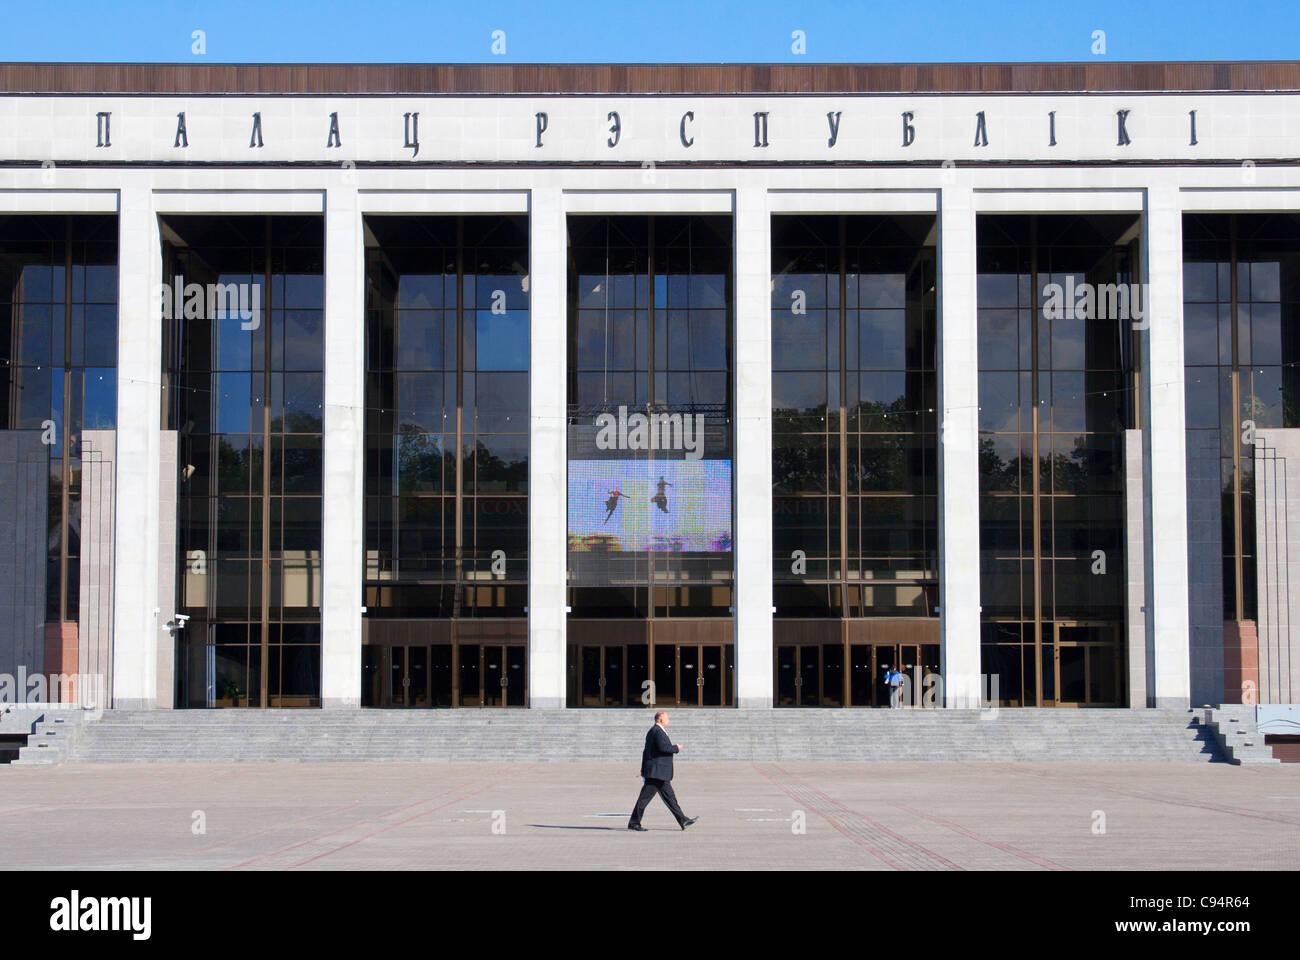 Palais de la République en Place Oktyabrskaya à Minsk, Bélarus Banque D'Images